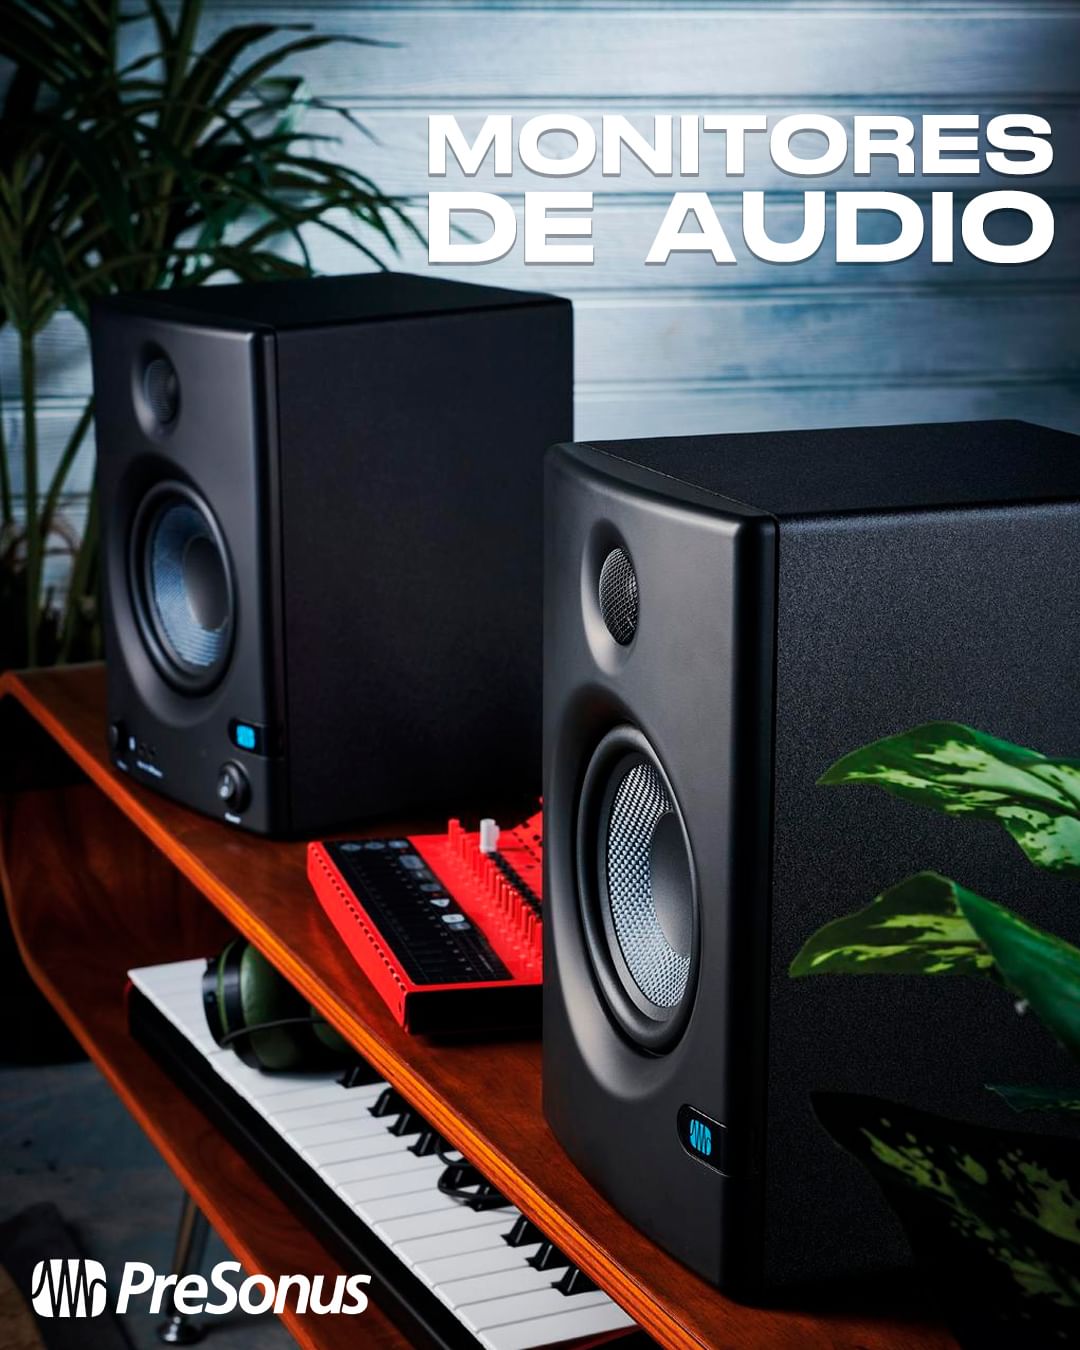 auriculares profesionales con monitor de estudio Dominican Republic